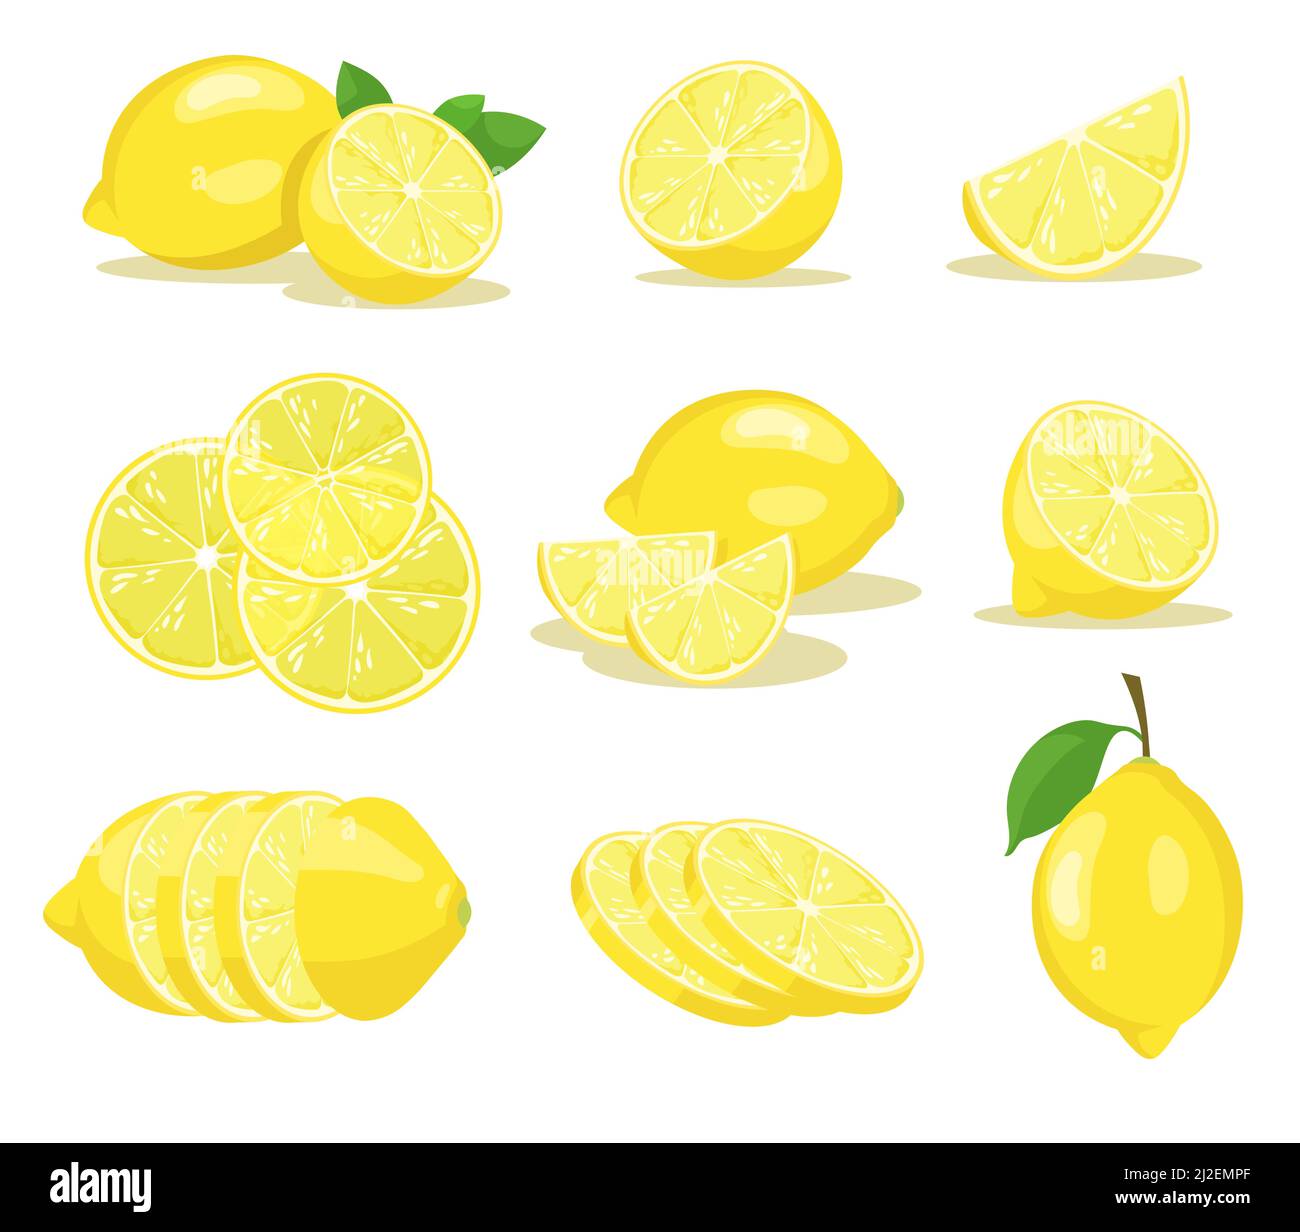 Jeu d'illustrations vectorielles en tranches de citron. Agrumes jaunes avec feuille verte coupée en deux ou coupée en tranches sur fond blanc. Santé, nourriture, fruits, limonade ou Illustration de Vecteur